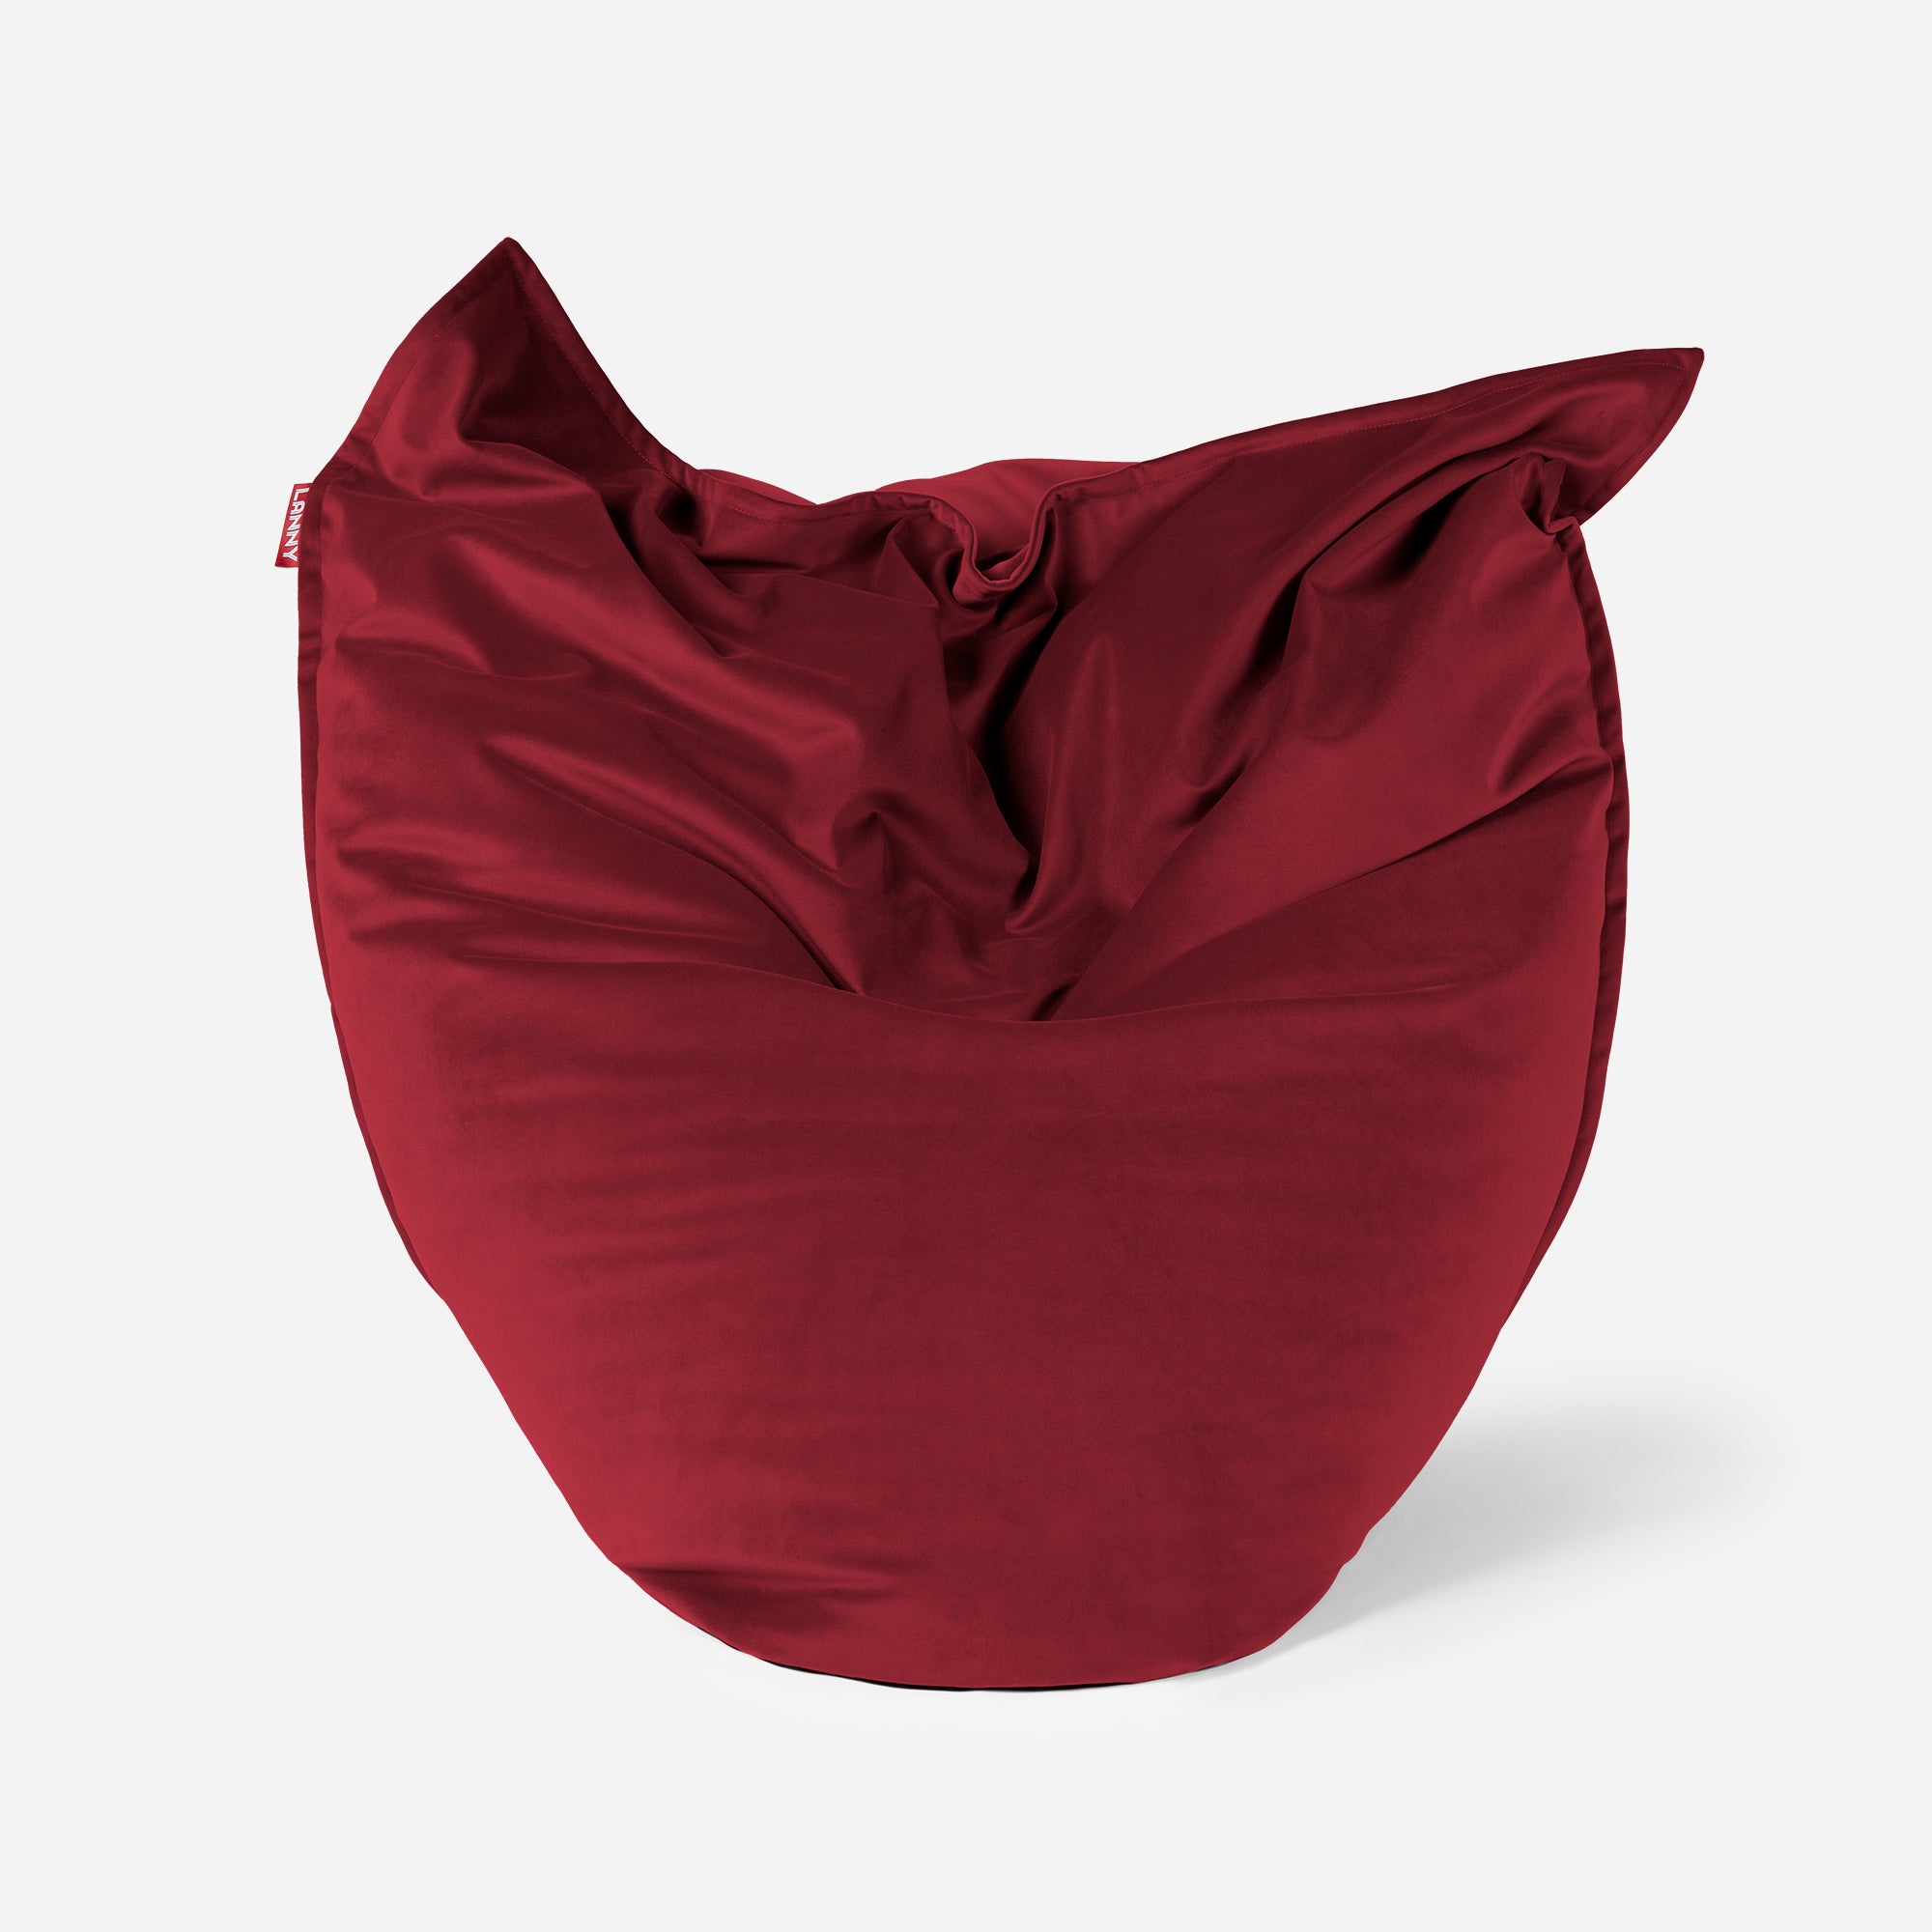 Sloppy Velvet Red Bean bag